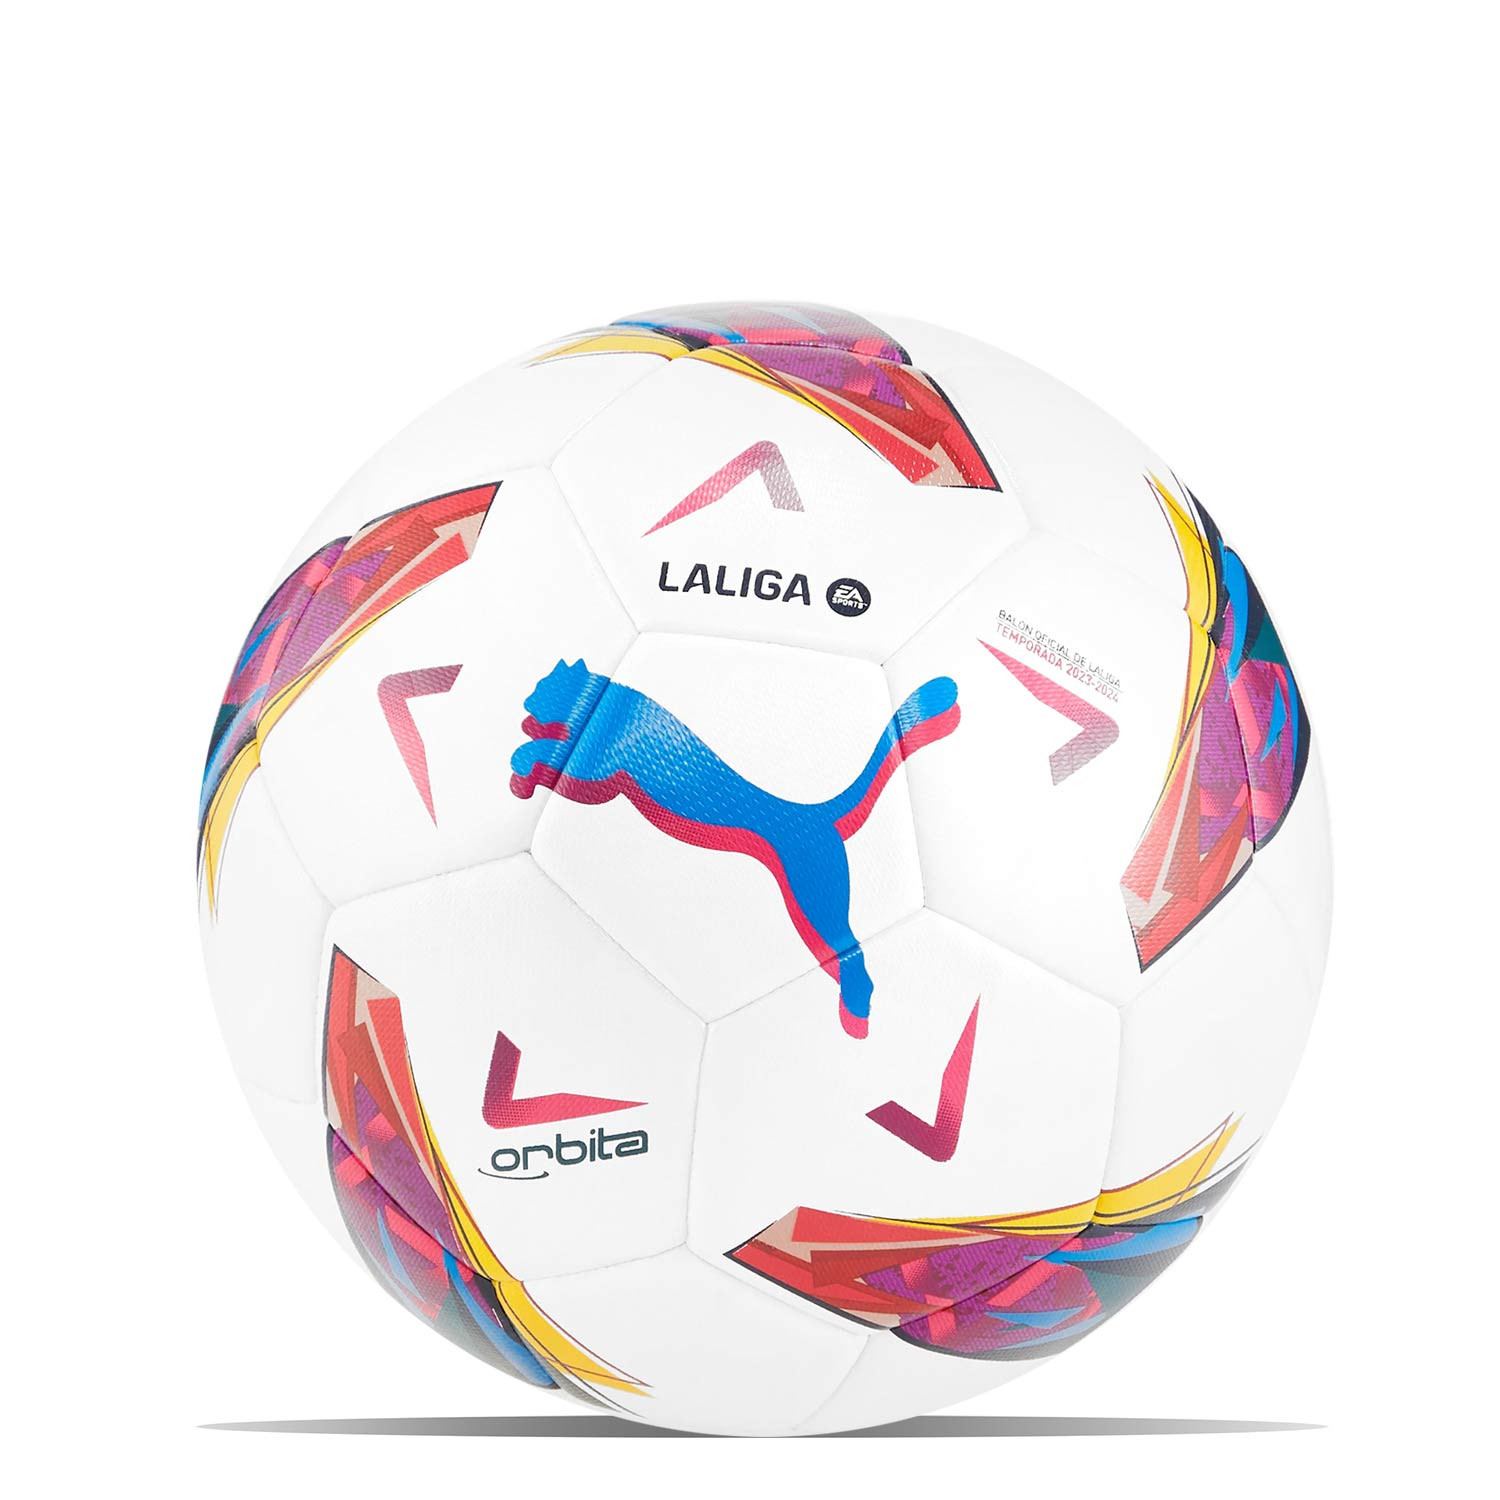 Balón Puma Orbita La Liga 1 2023 2024 Hybrid talla 3